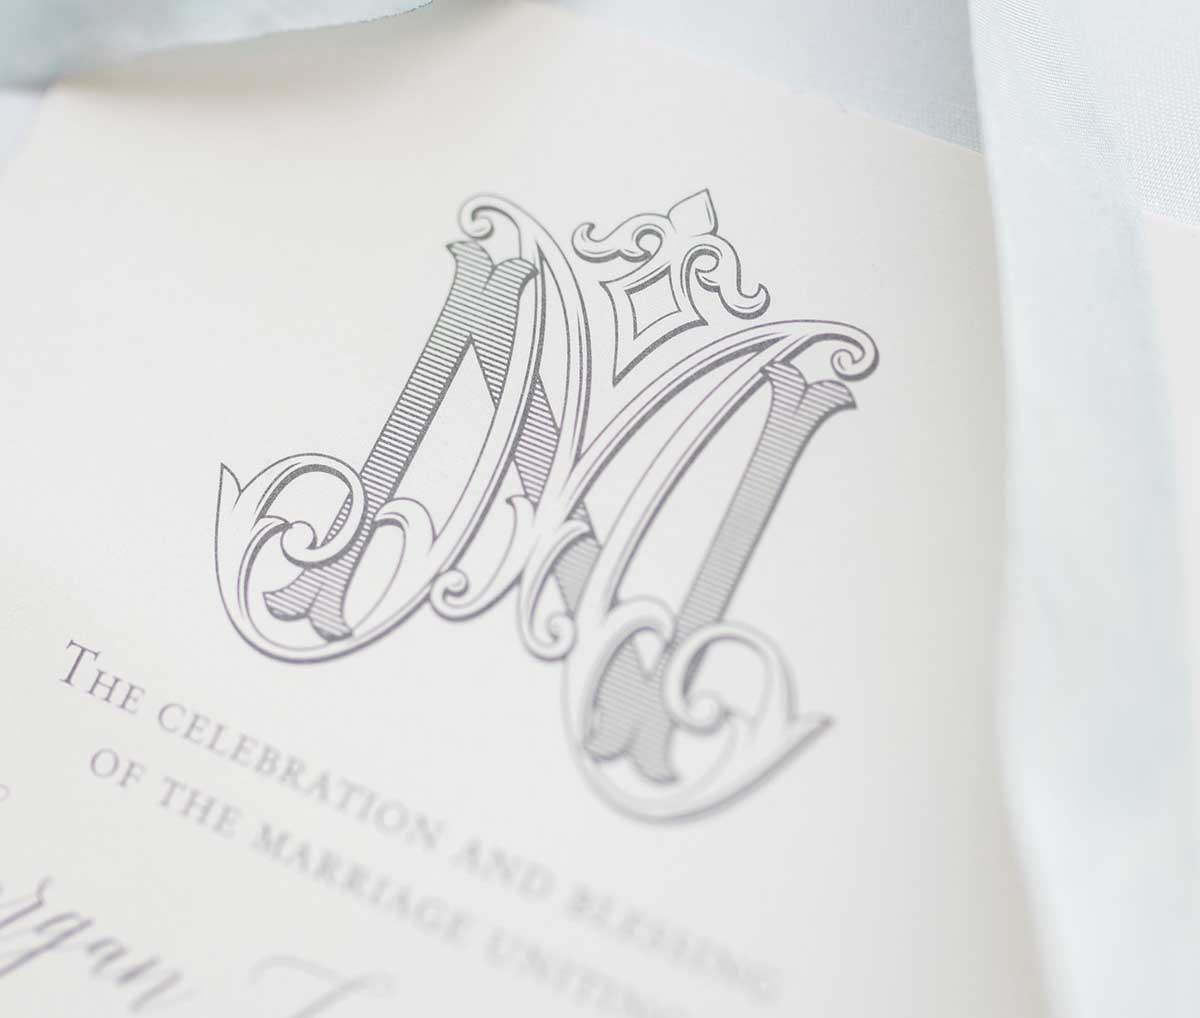 AM initial wedding monogram logo in 2023  Wedding logo monogram, Wedding  initials logo, Monogram wedding